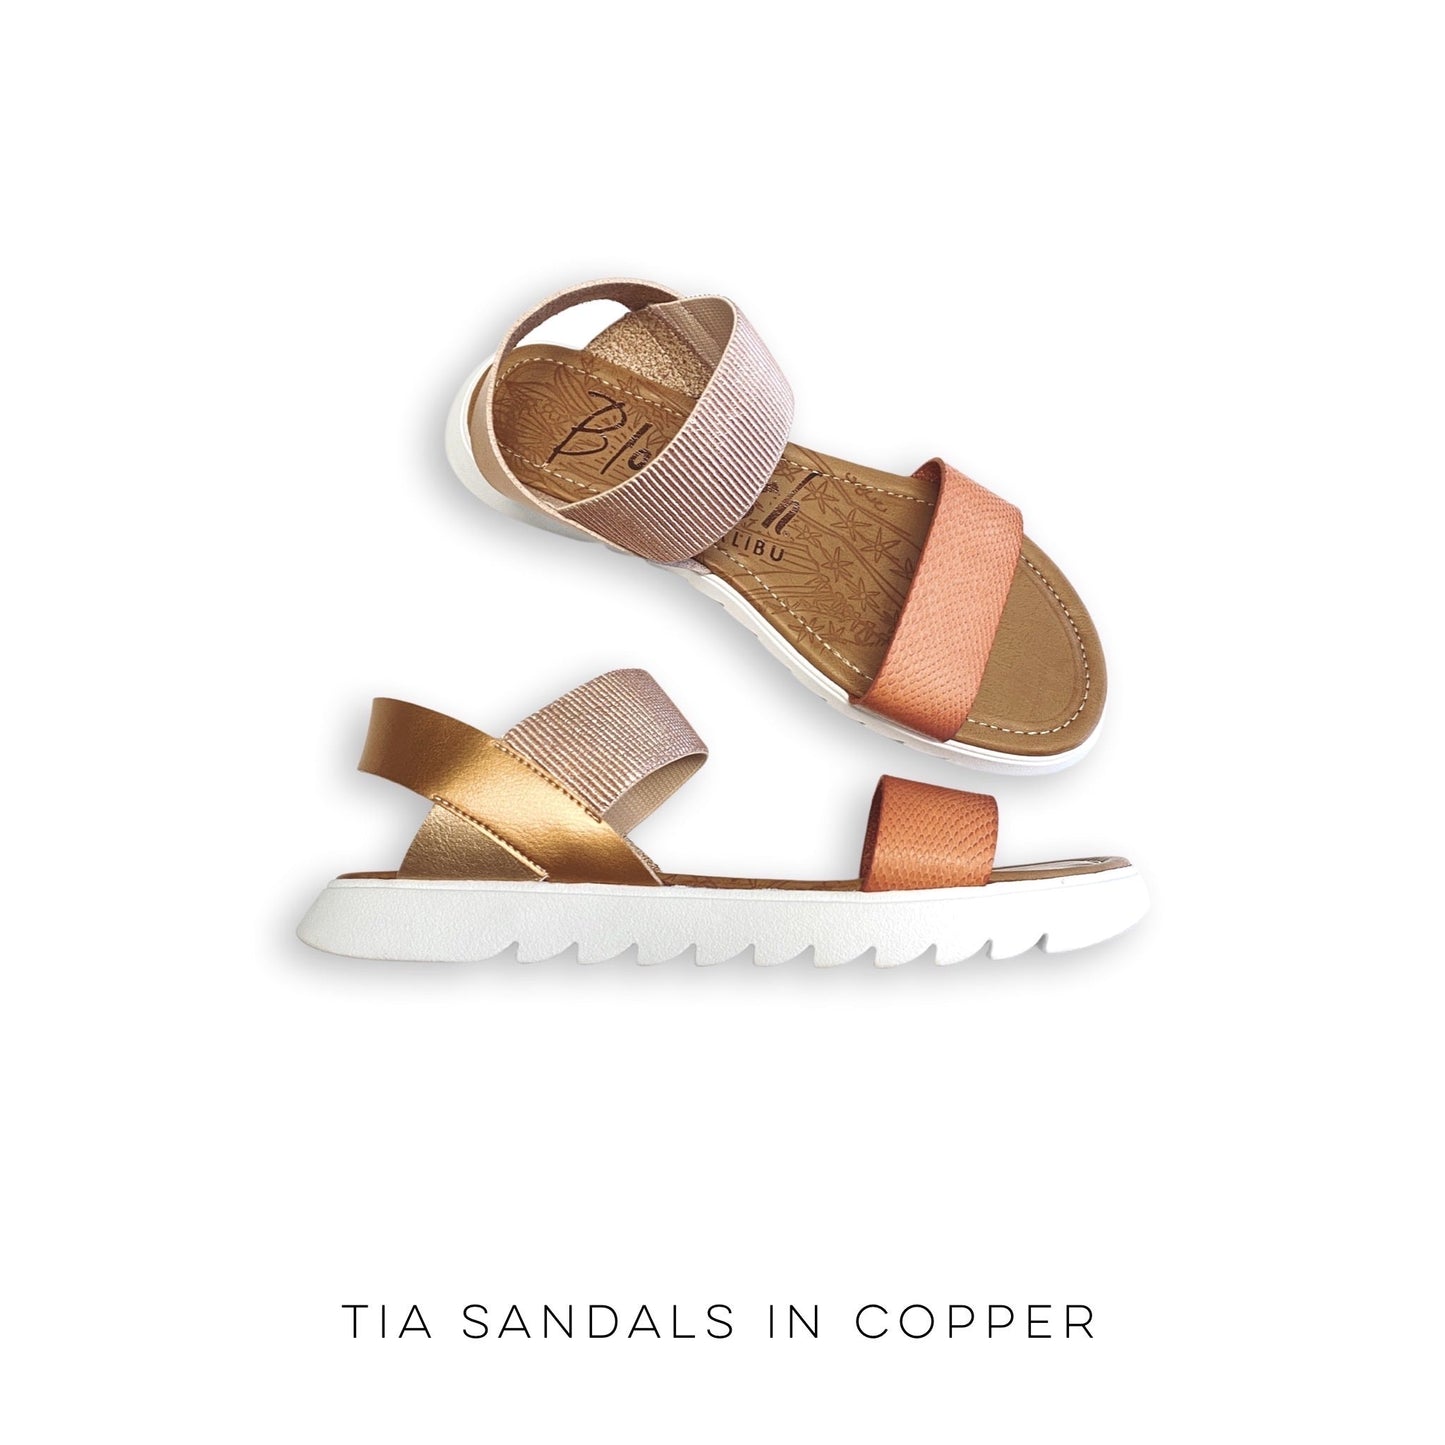 Tia Sandals in Copper